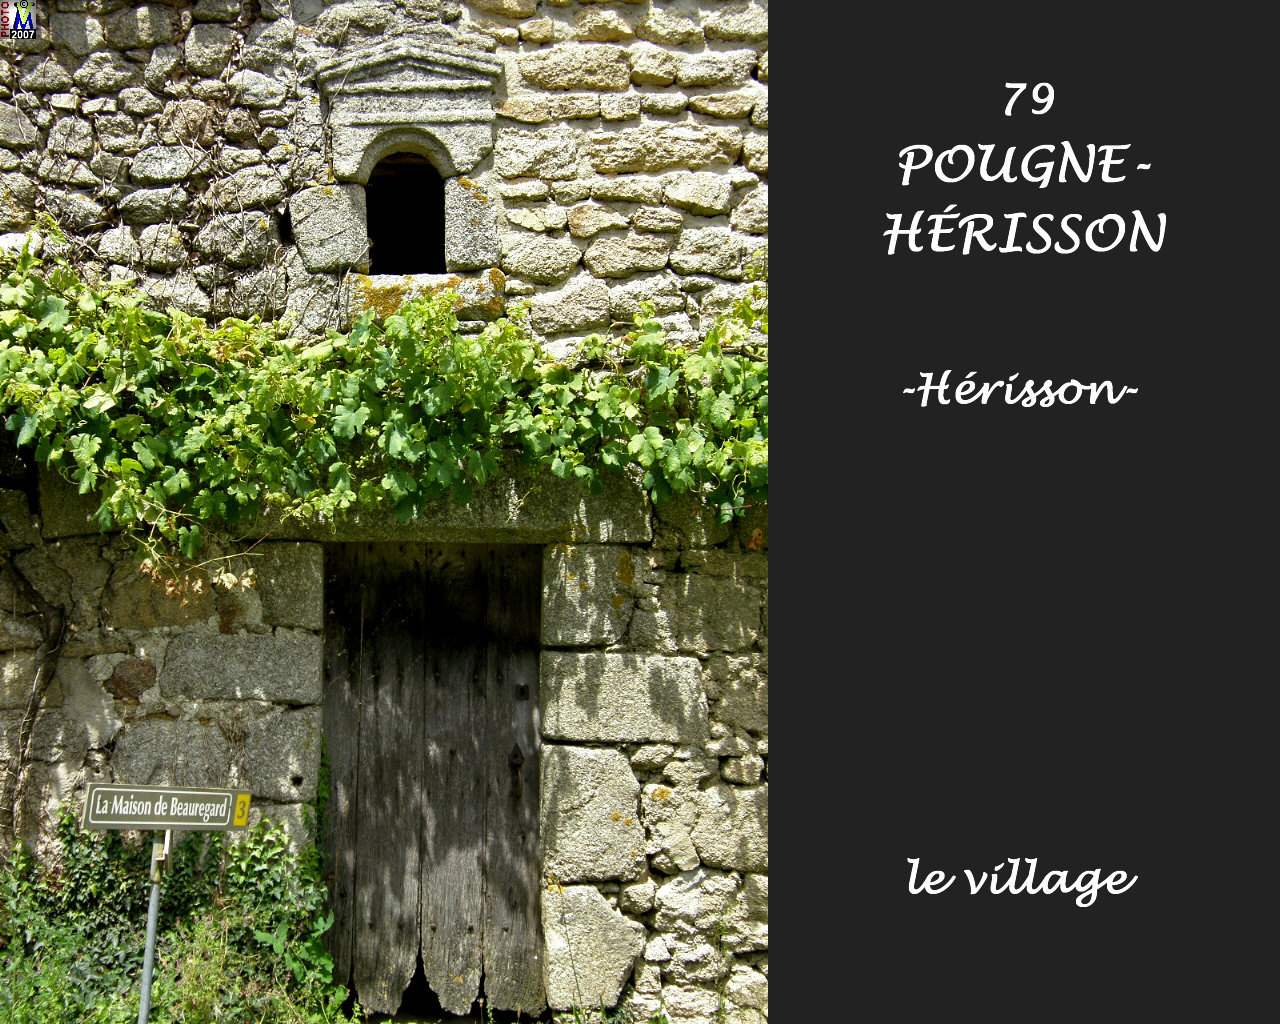 79POUGNE-HERISSON_herisson_village_132.jpg